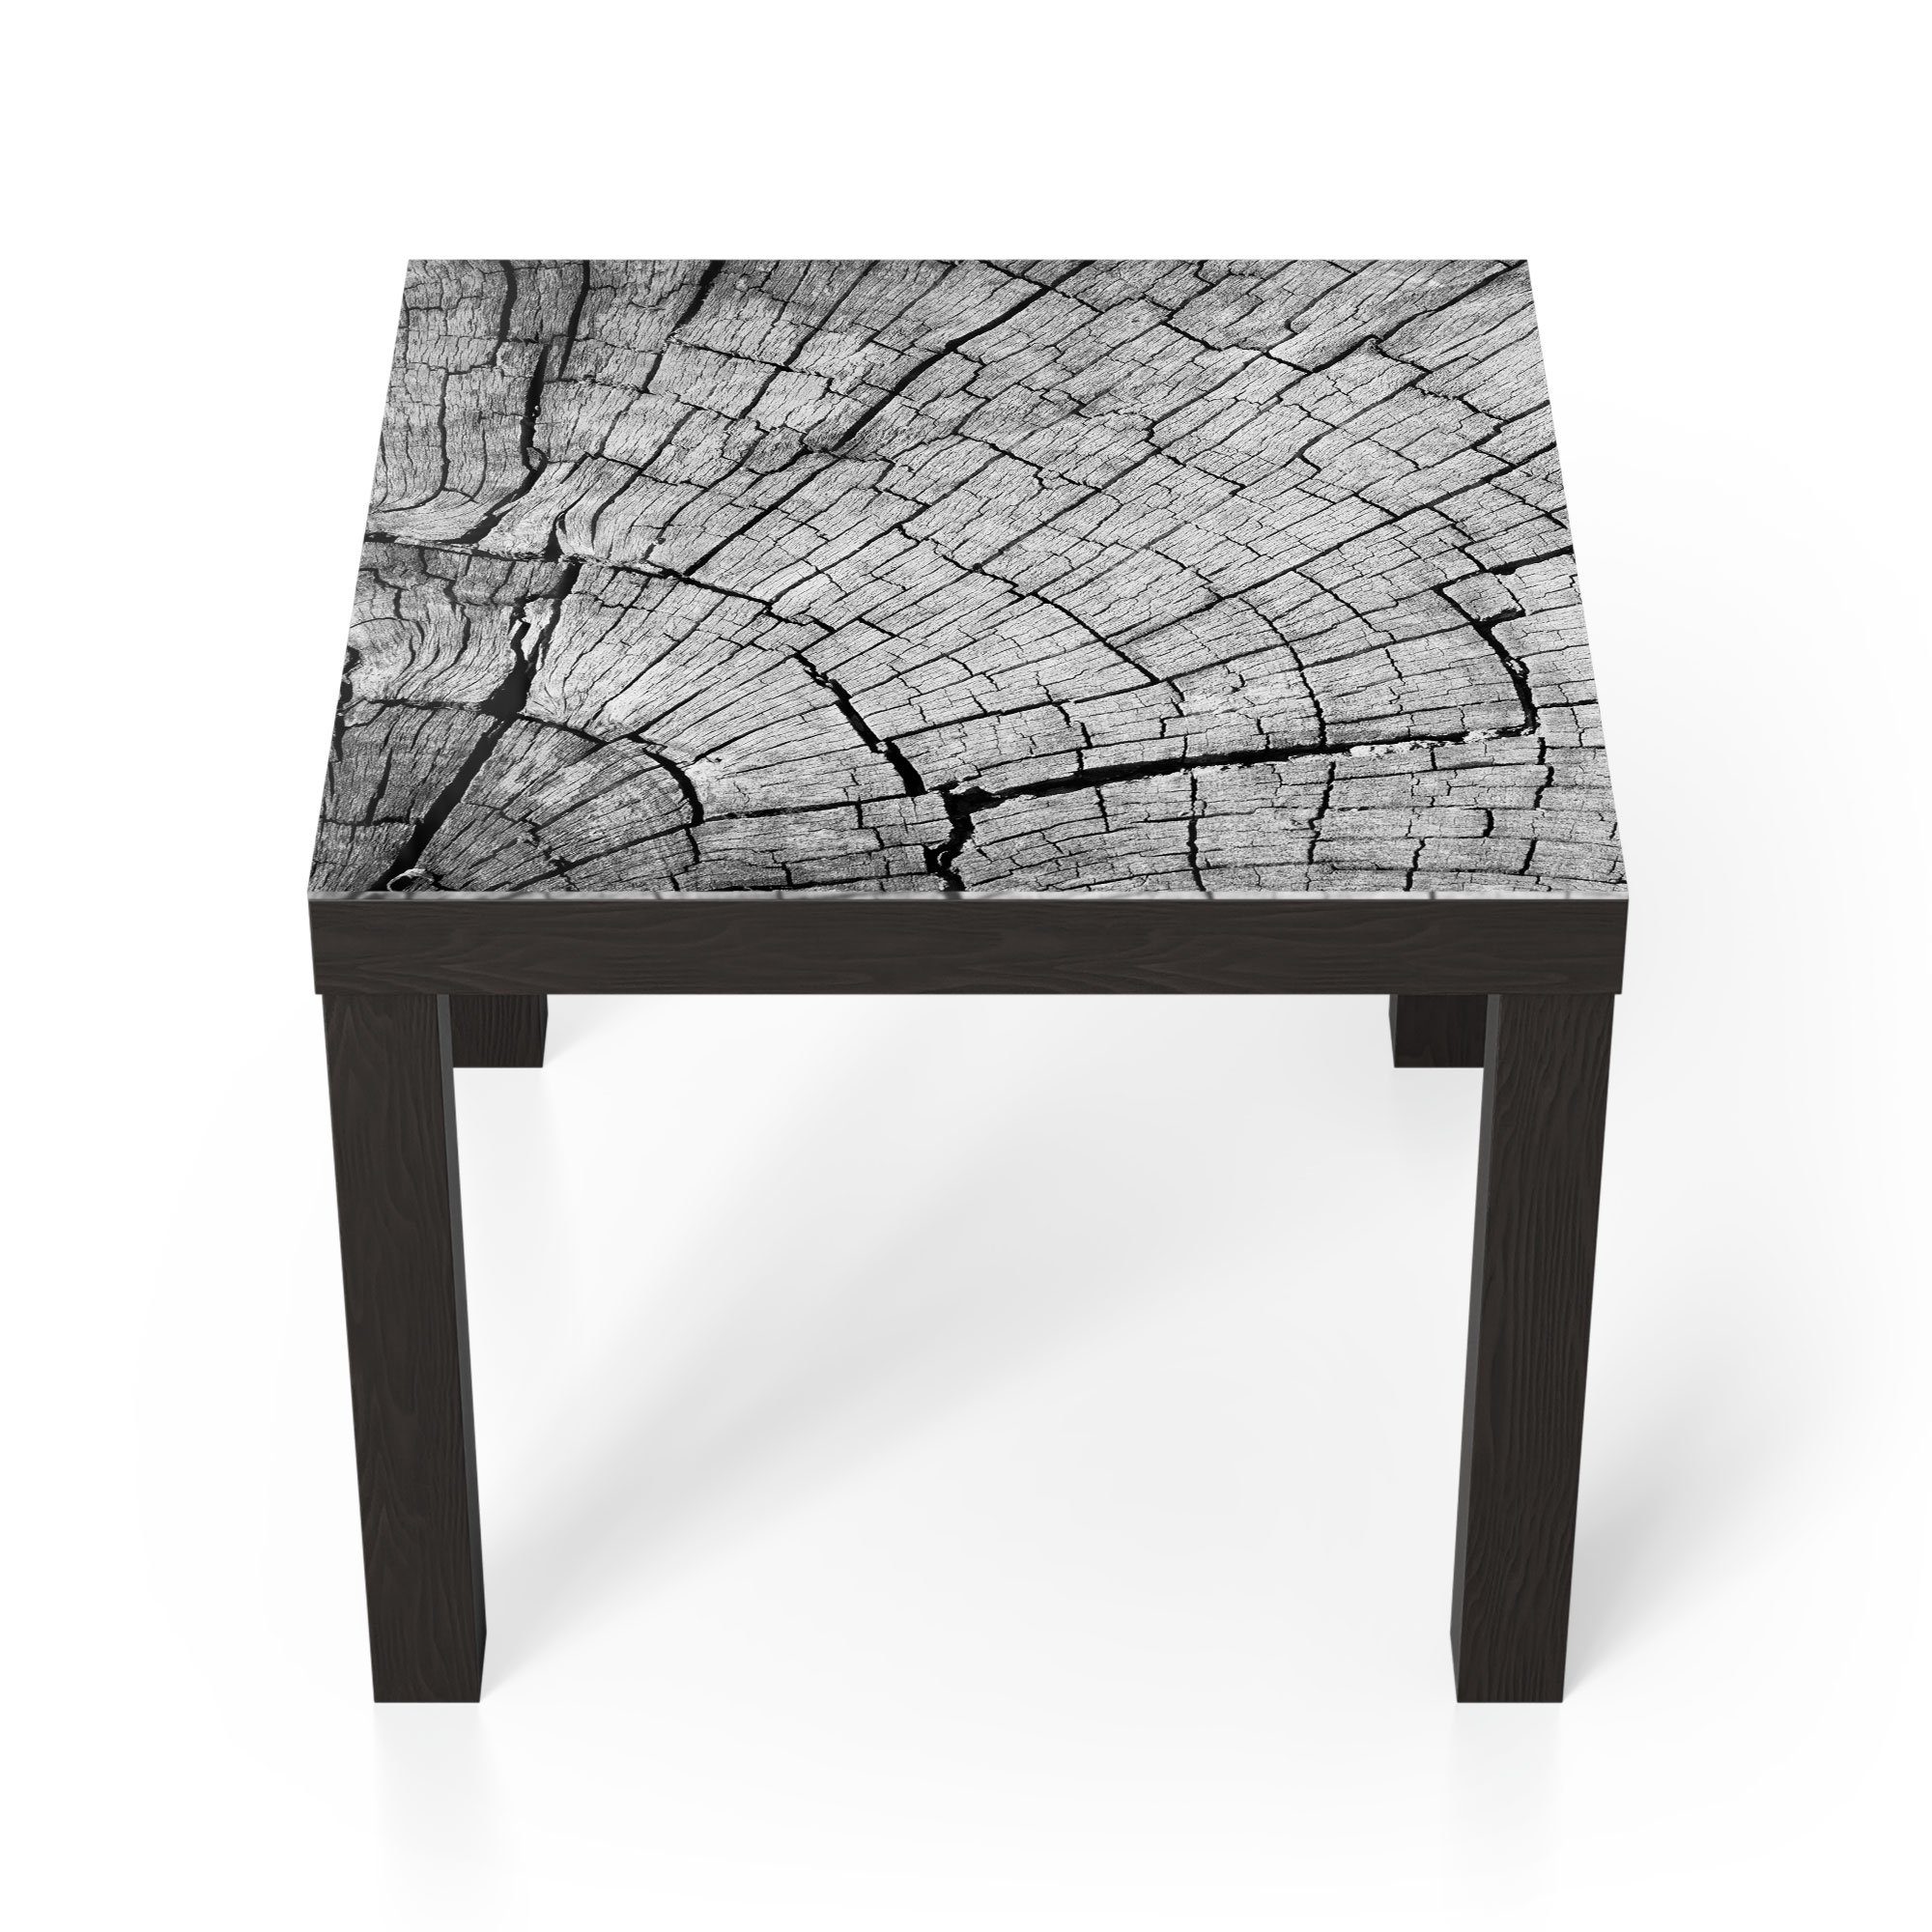 DEQORI Couchtisch 'Gealterte Holzstruktur', Glas Beistelltisch Glastisch modern Schwarz